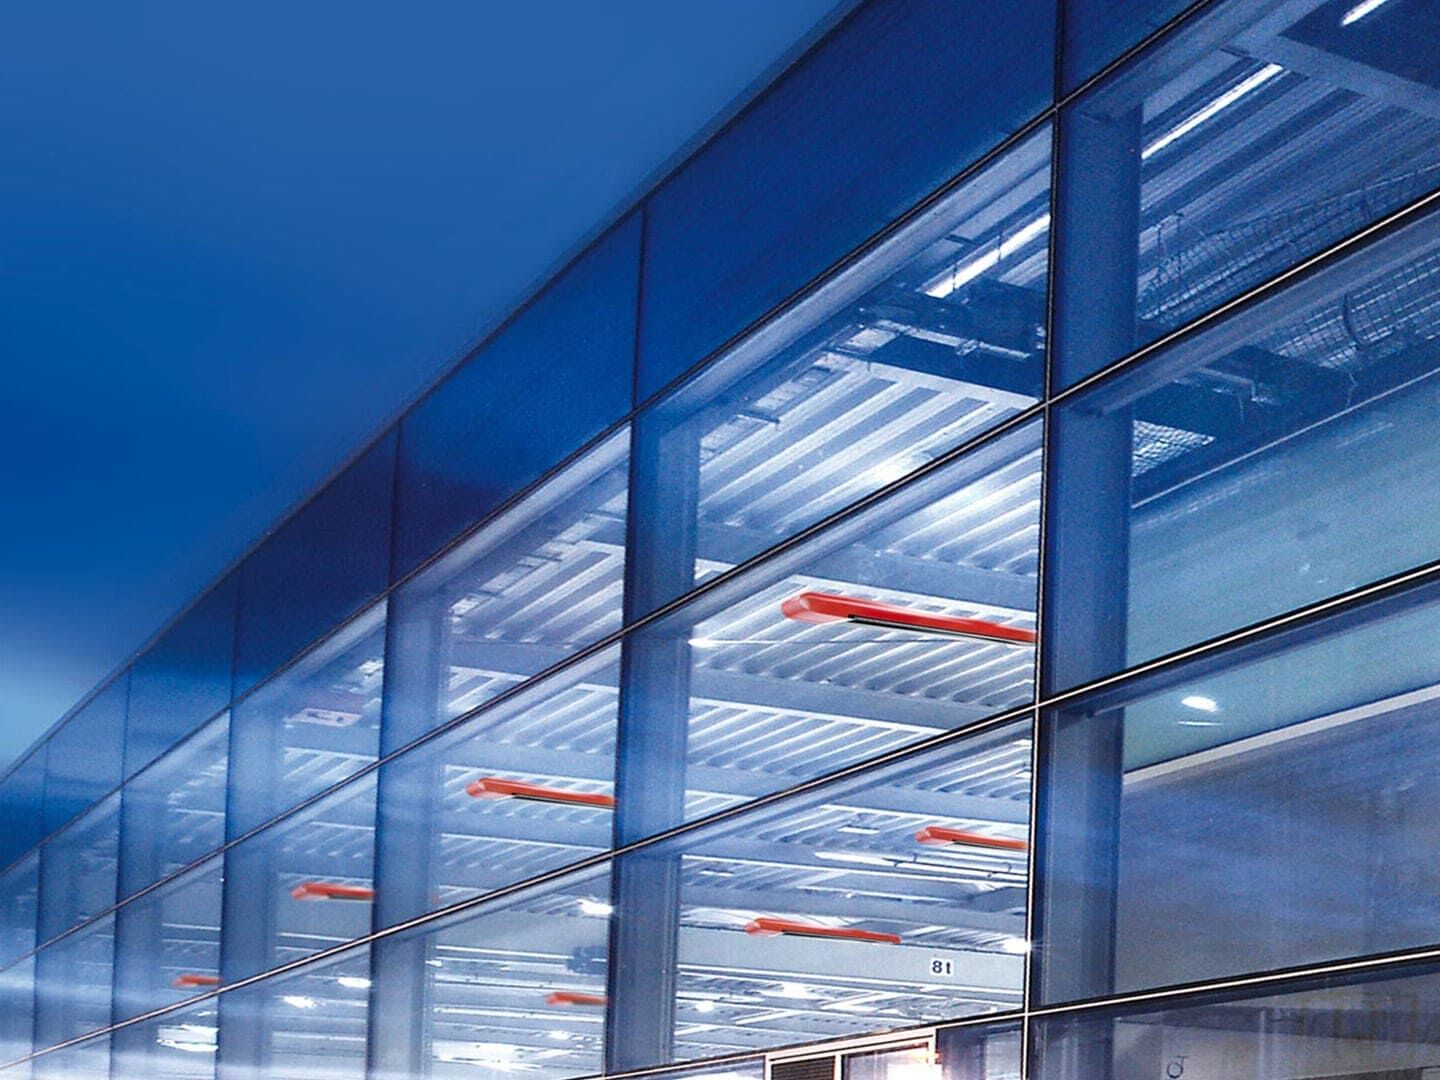 Außenansicht einer großen von innen beleuchteten Halle. Das kalte blaue Licht, lässt ansprechende Design der roten MAXIMA Dunkelstrahler hervorstechen.